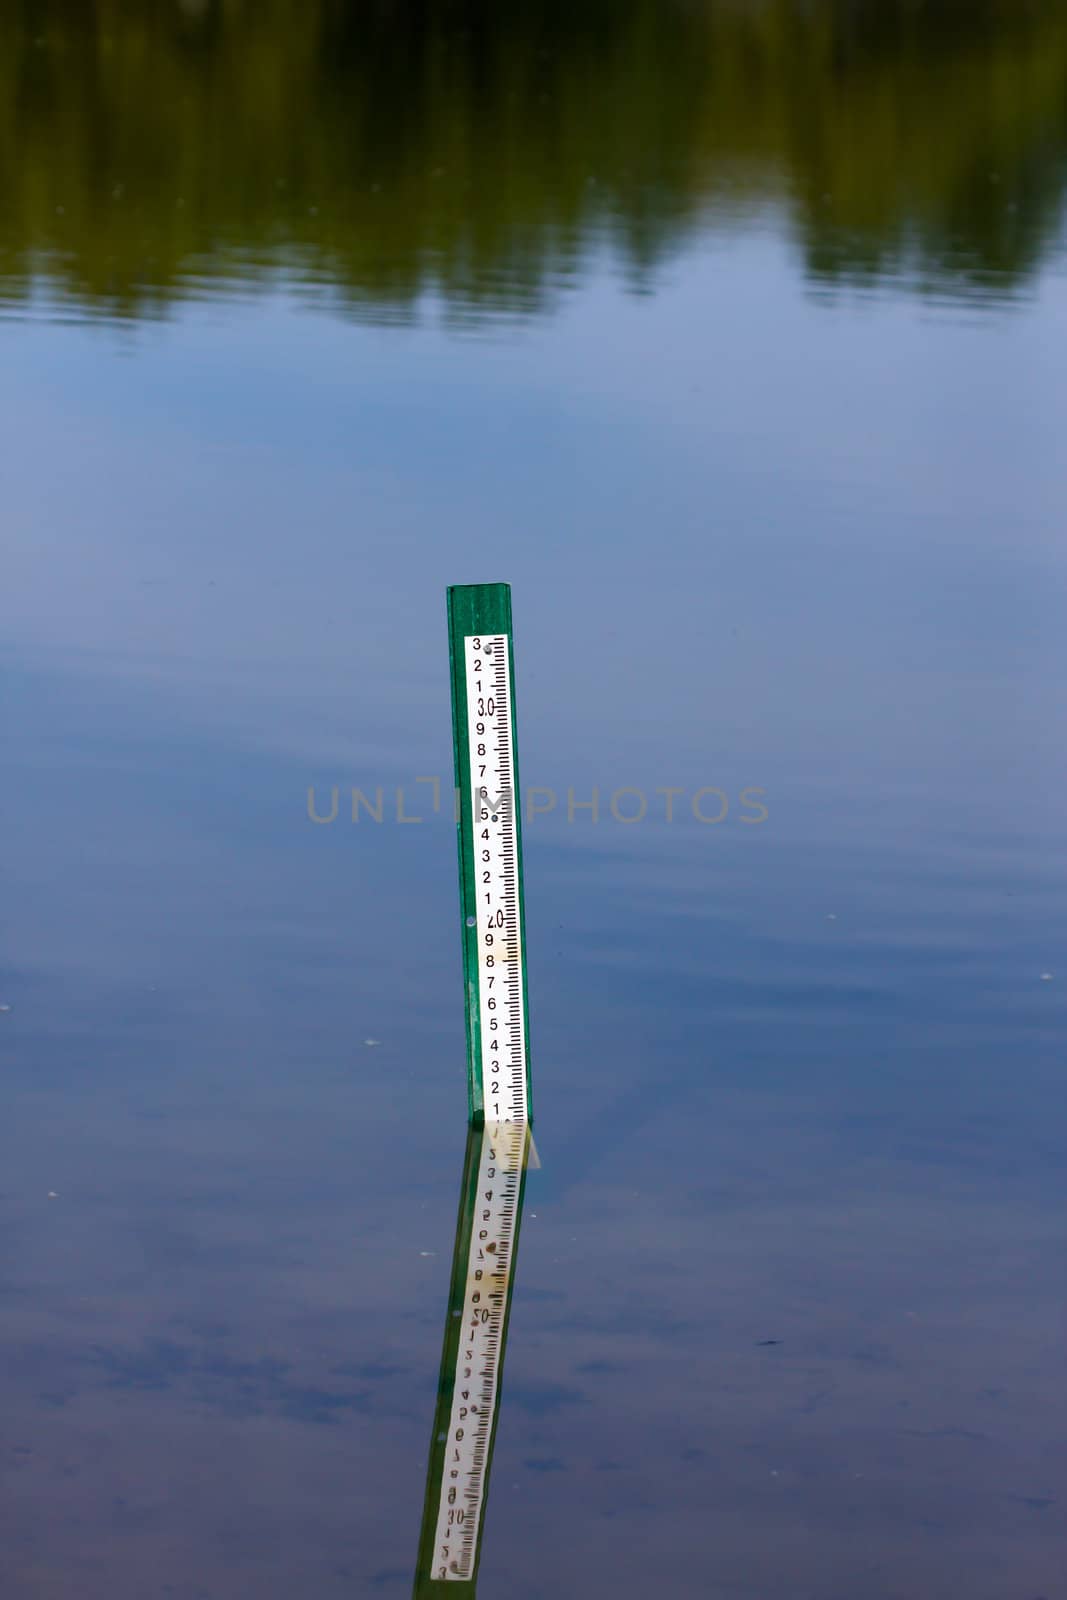 Water level measurement gauge.